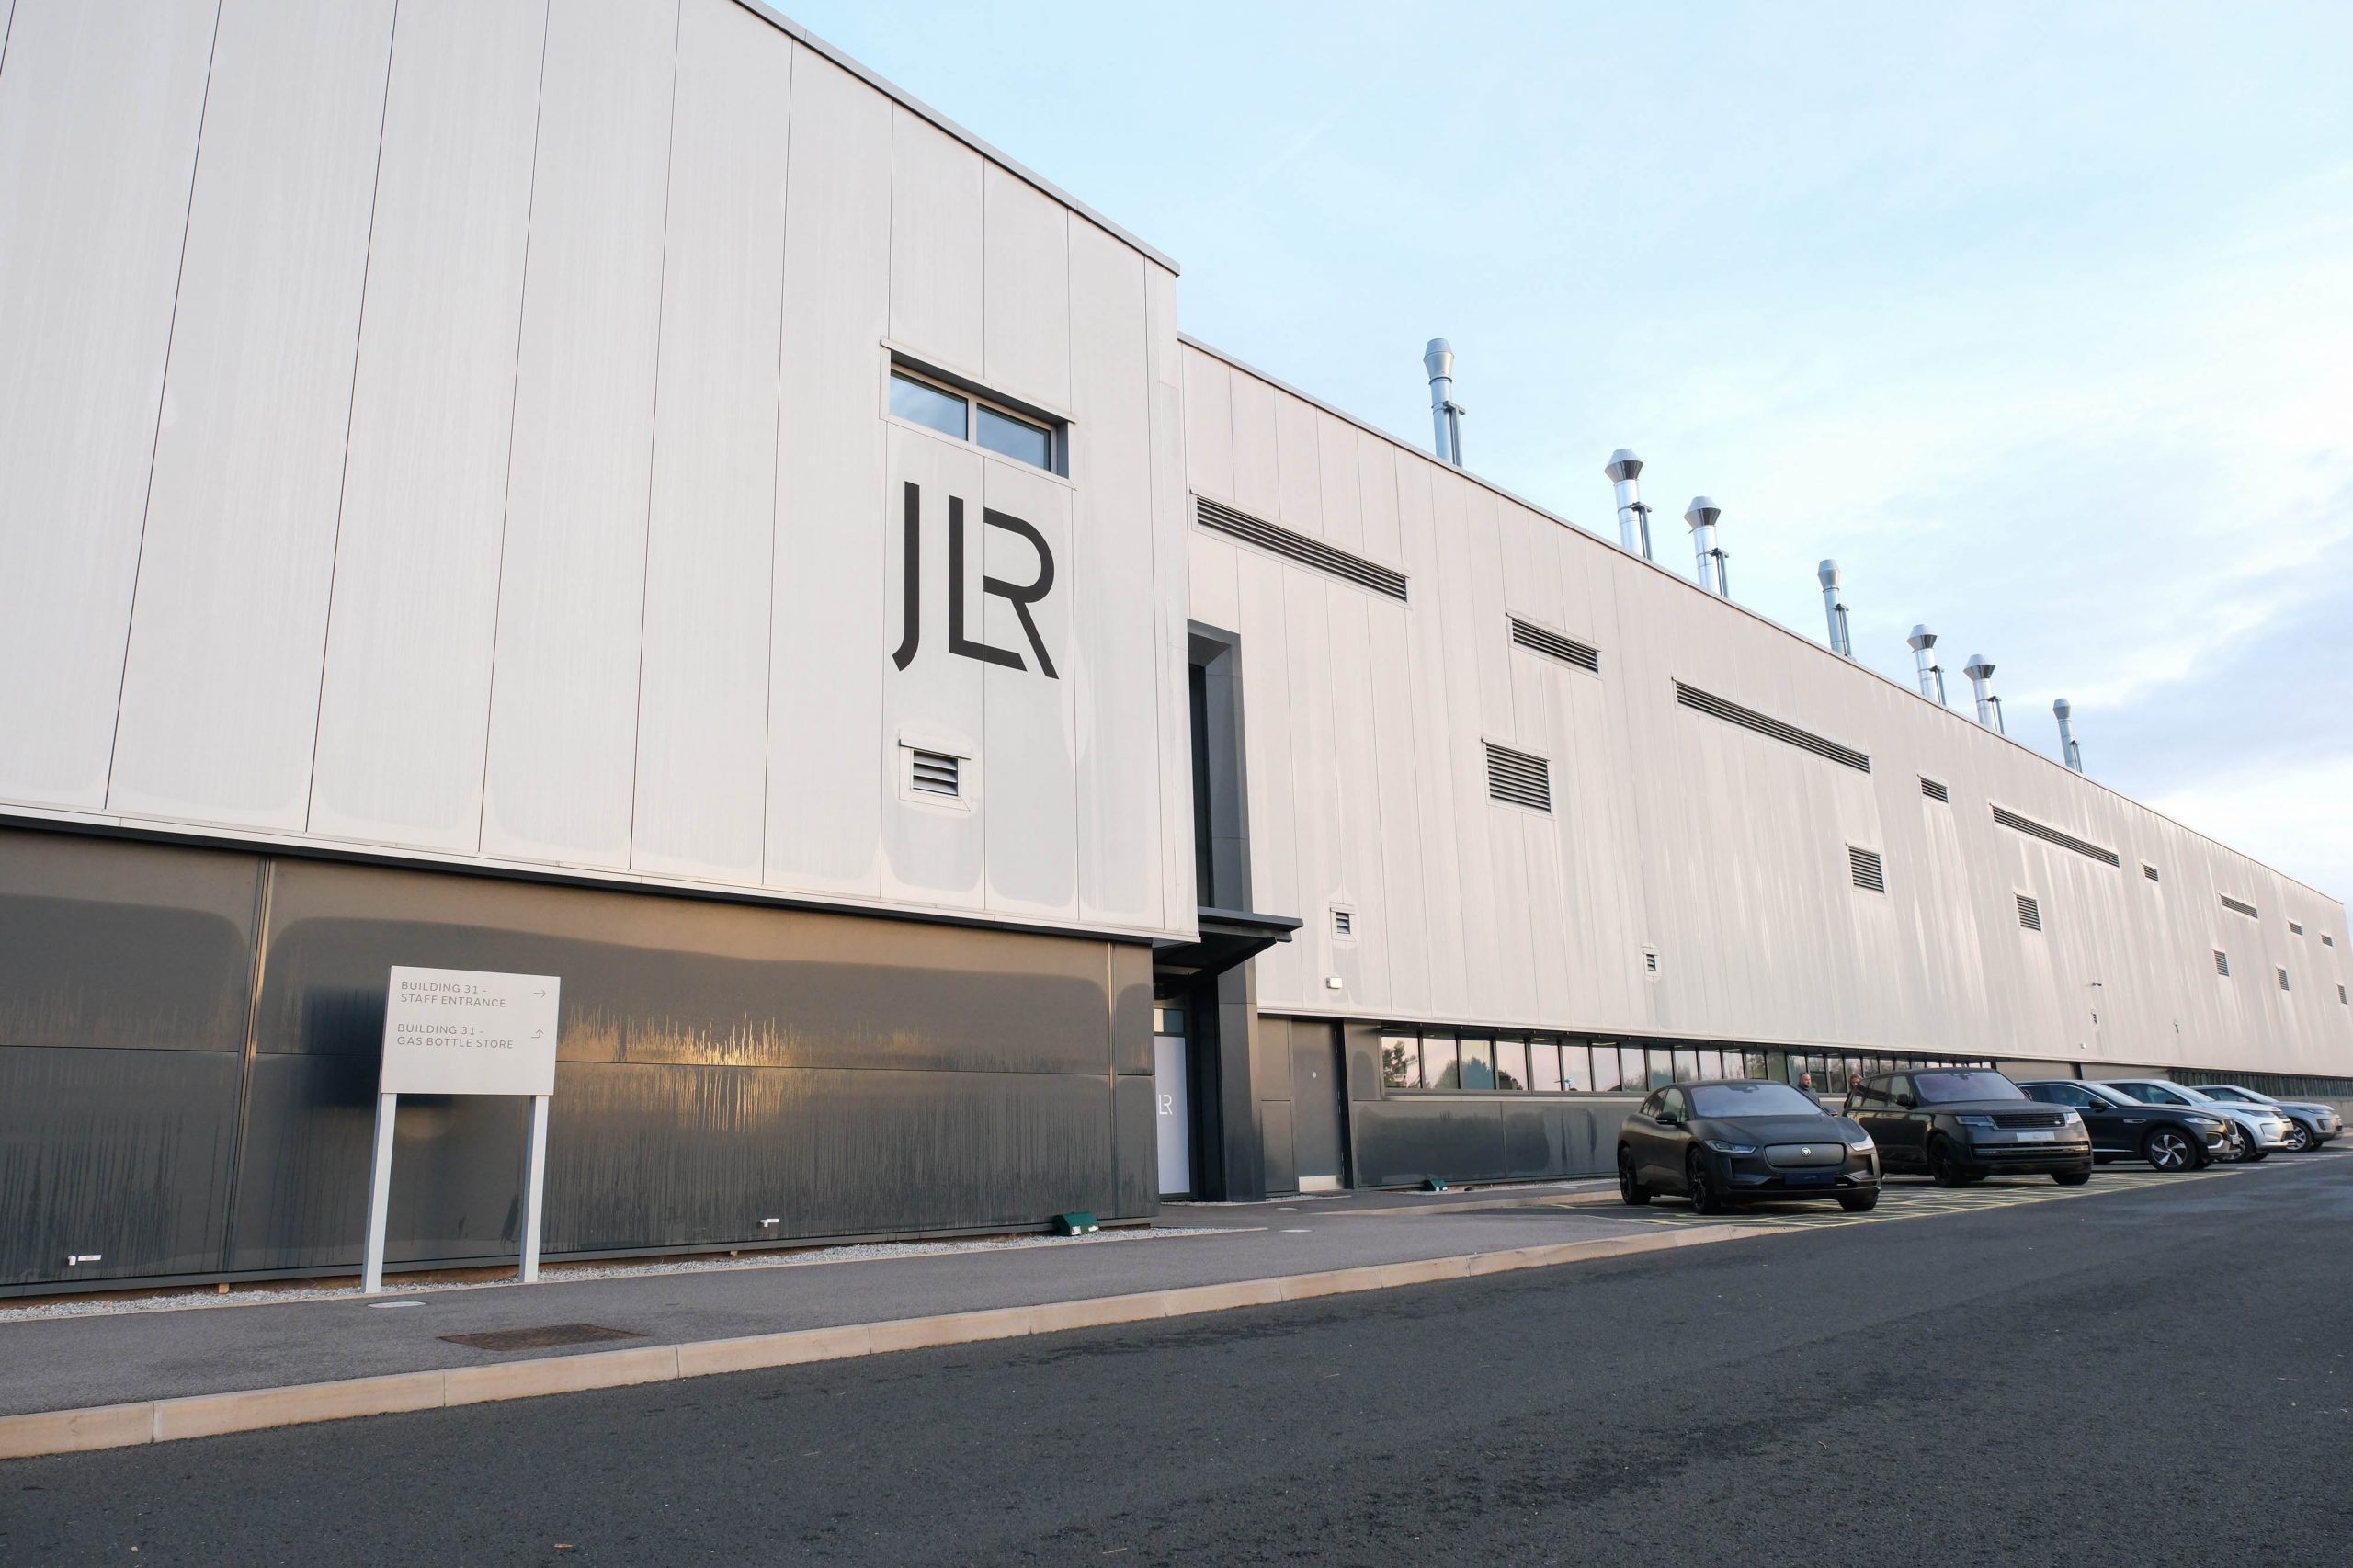 شركة JLR (جاكوار لاند روڤر) تعمل على تسريع عملية التحول الكهربائي من خلال مختبر الطاقة المستقبلية الجديد بقيمة تبلغ 250 مليون جنيه إسترليني 5